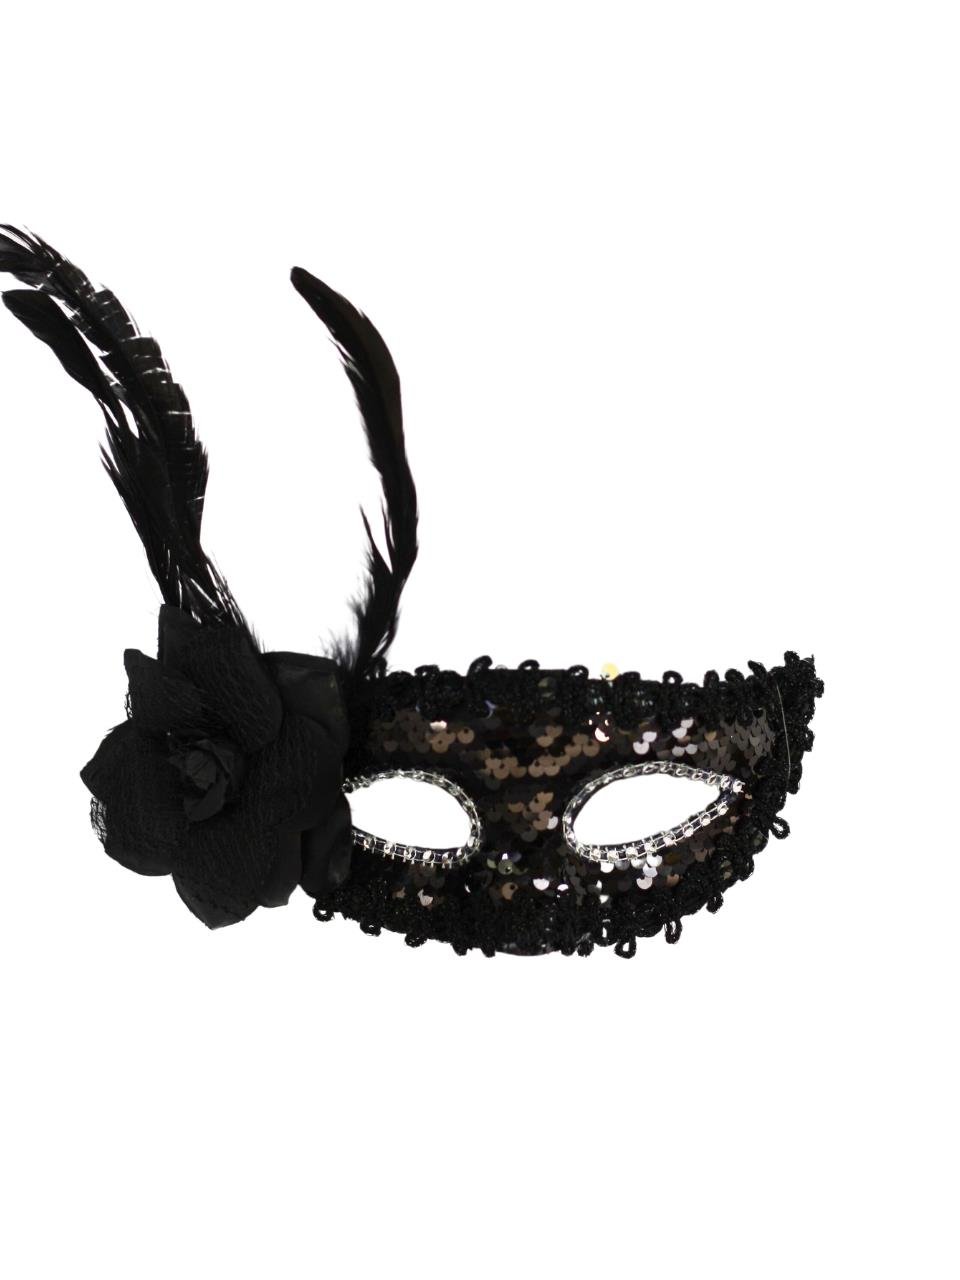 Yandan Tüylü Payet Pullu Parti Maskesi Balo Parti Kostüm Aksesuarı Maske  Siyah